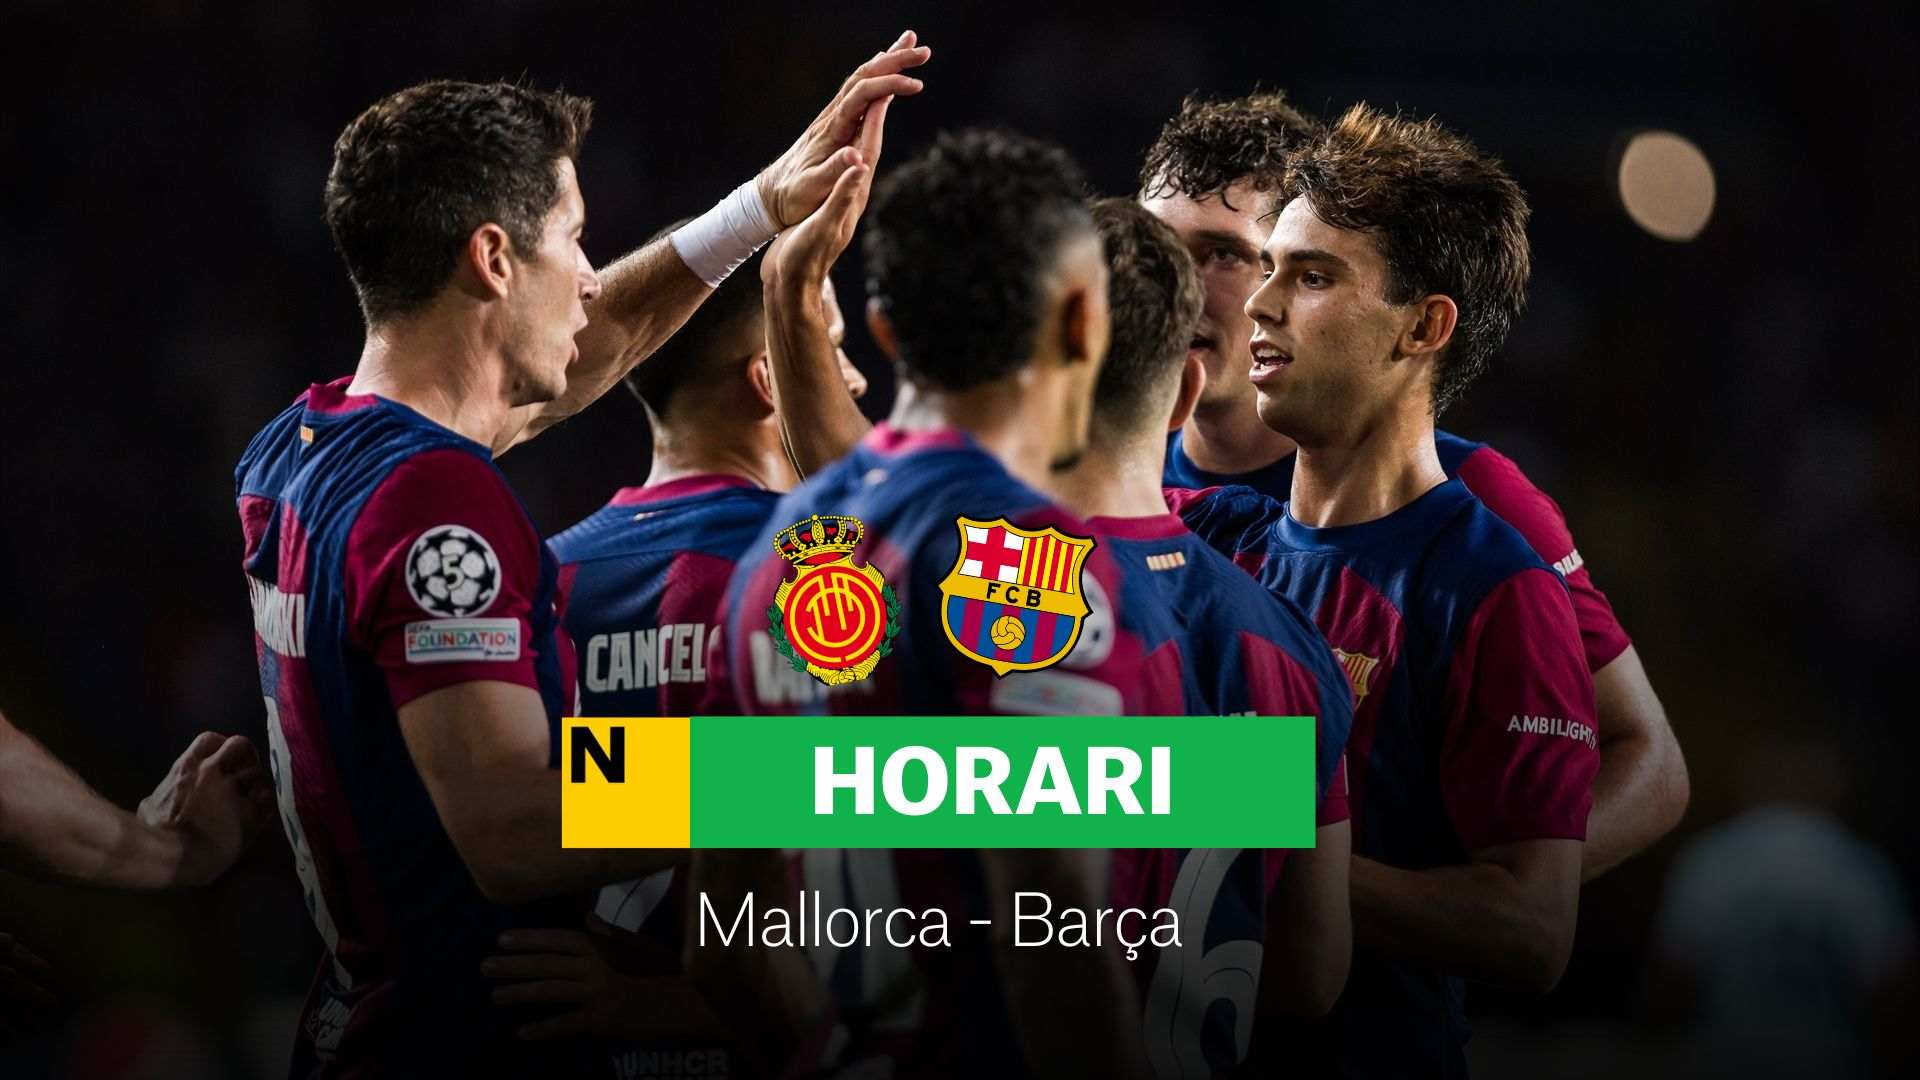 Mallorca - Barça, avui: Alineació, horari i on veure la jornada 7 de la Lliga